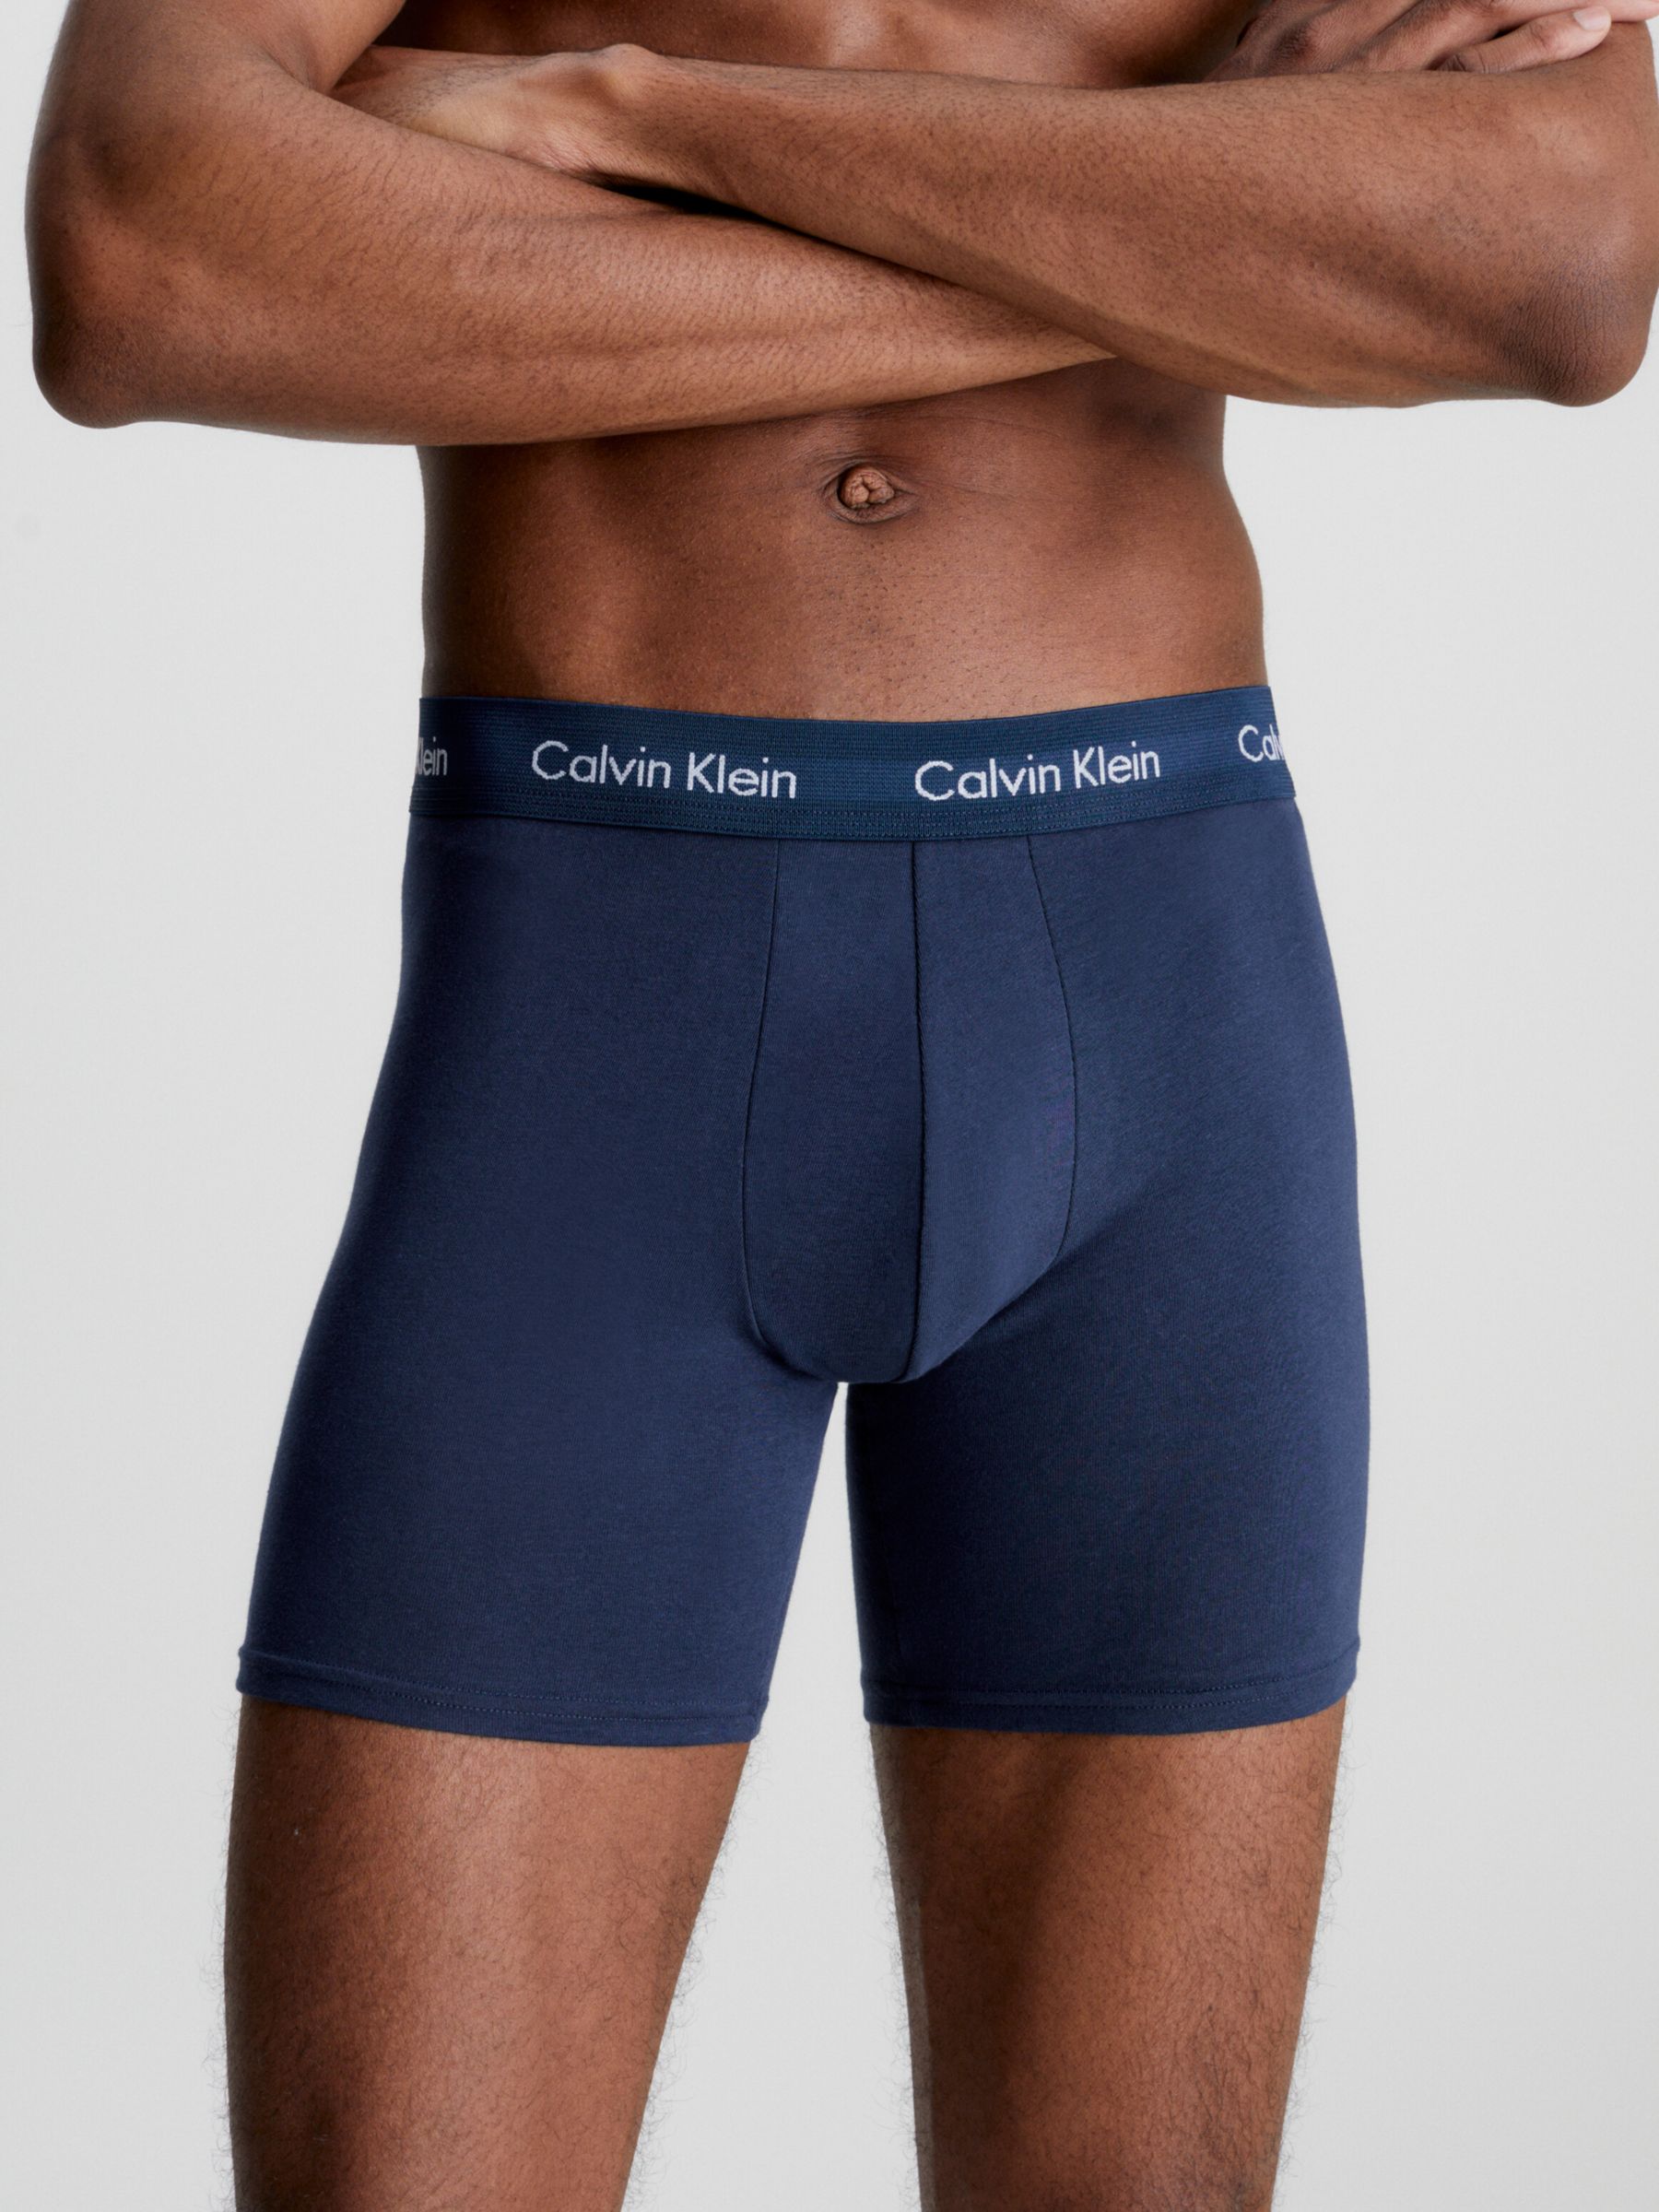 Calvin Klein Cotton Stretch Boxer Brief, Pack of 3, Black/Blue Shadow/Cobalt Water, S